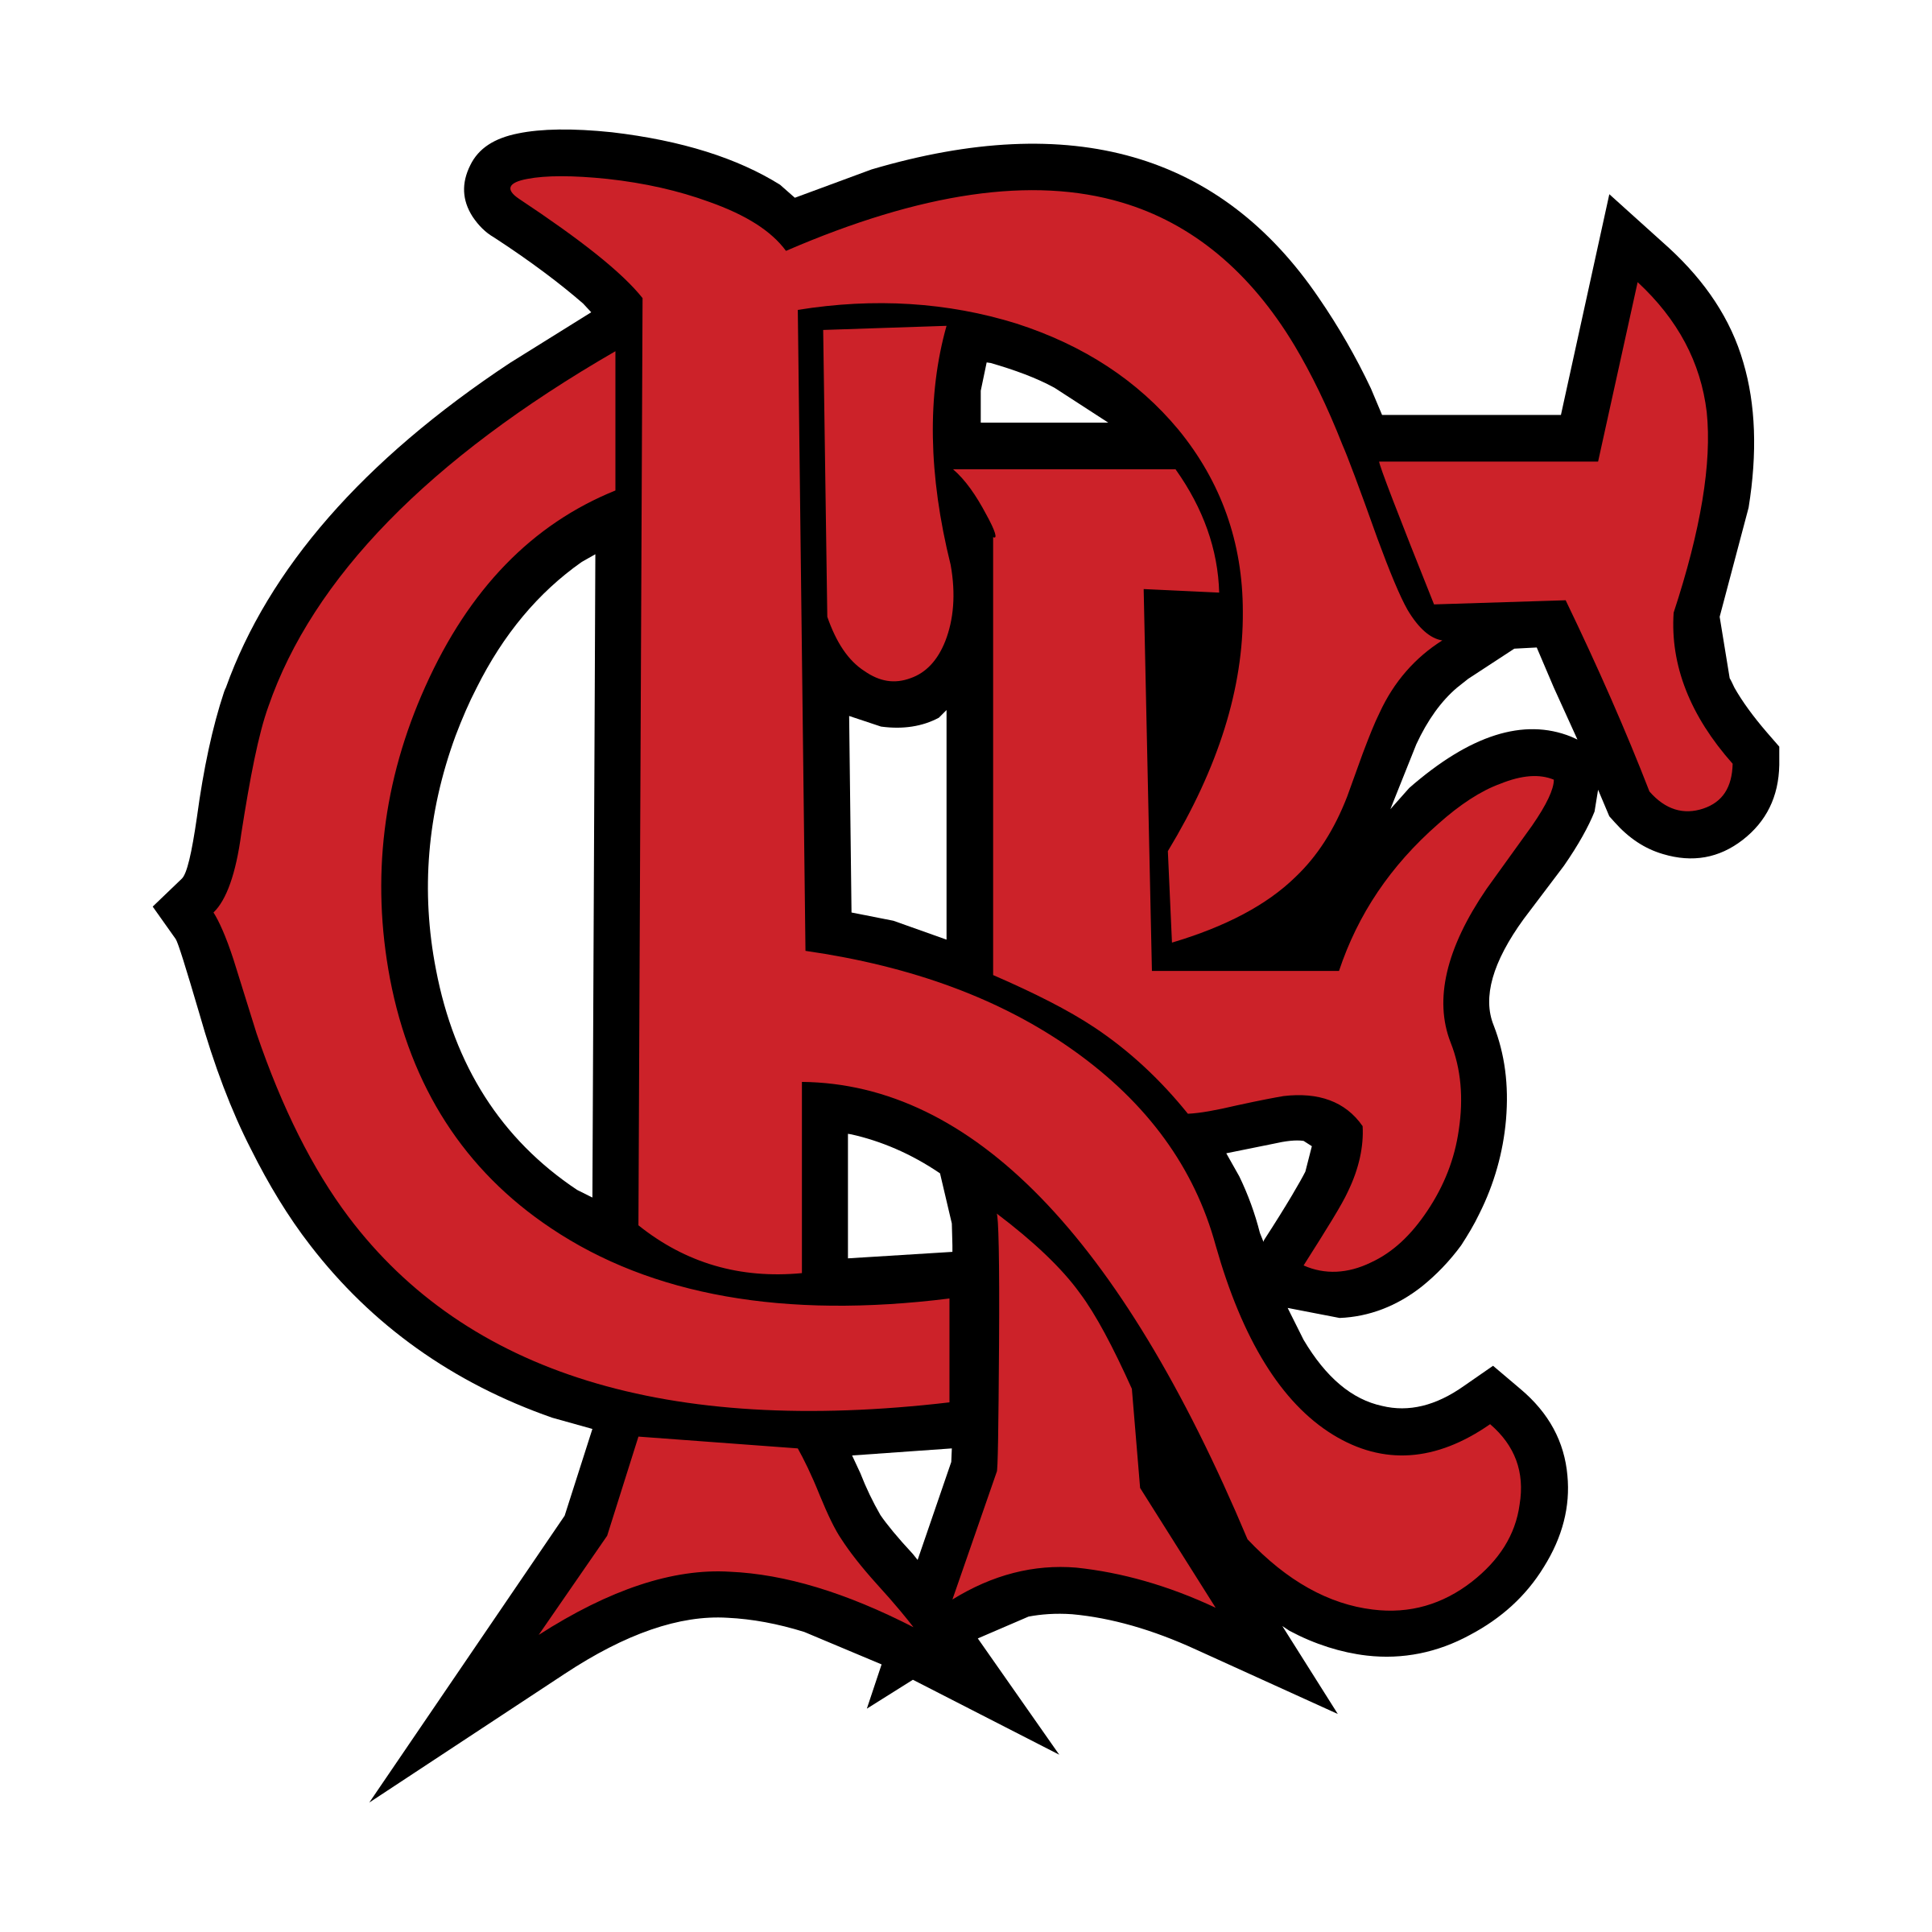 Imagens de logo flamengo png